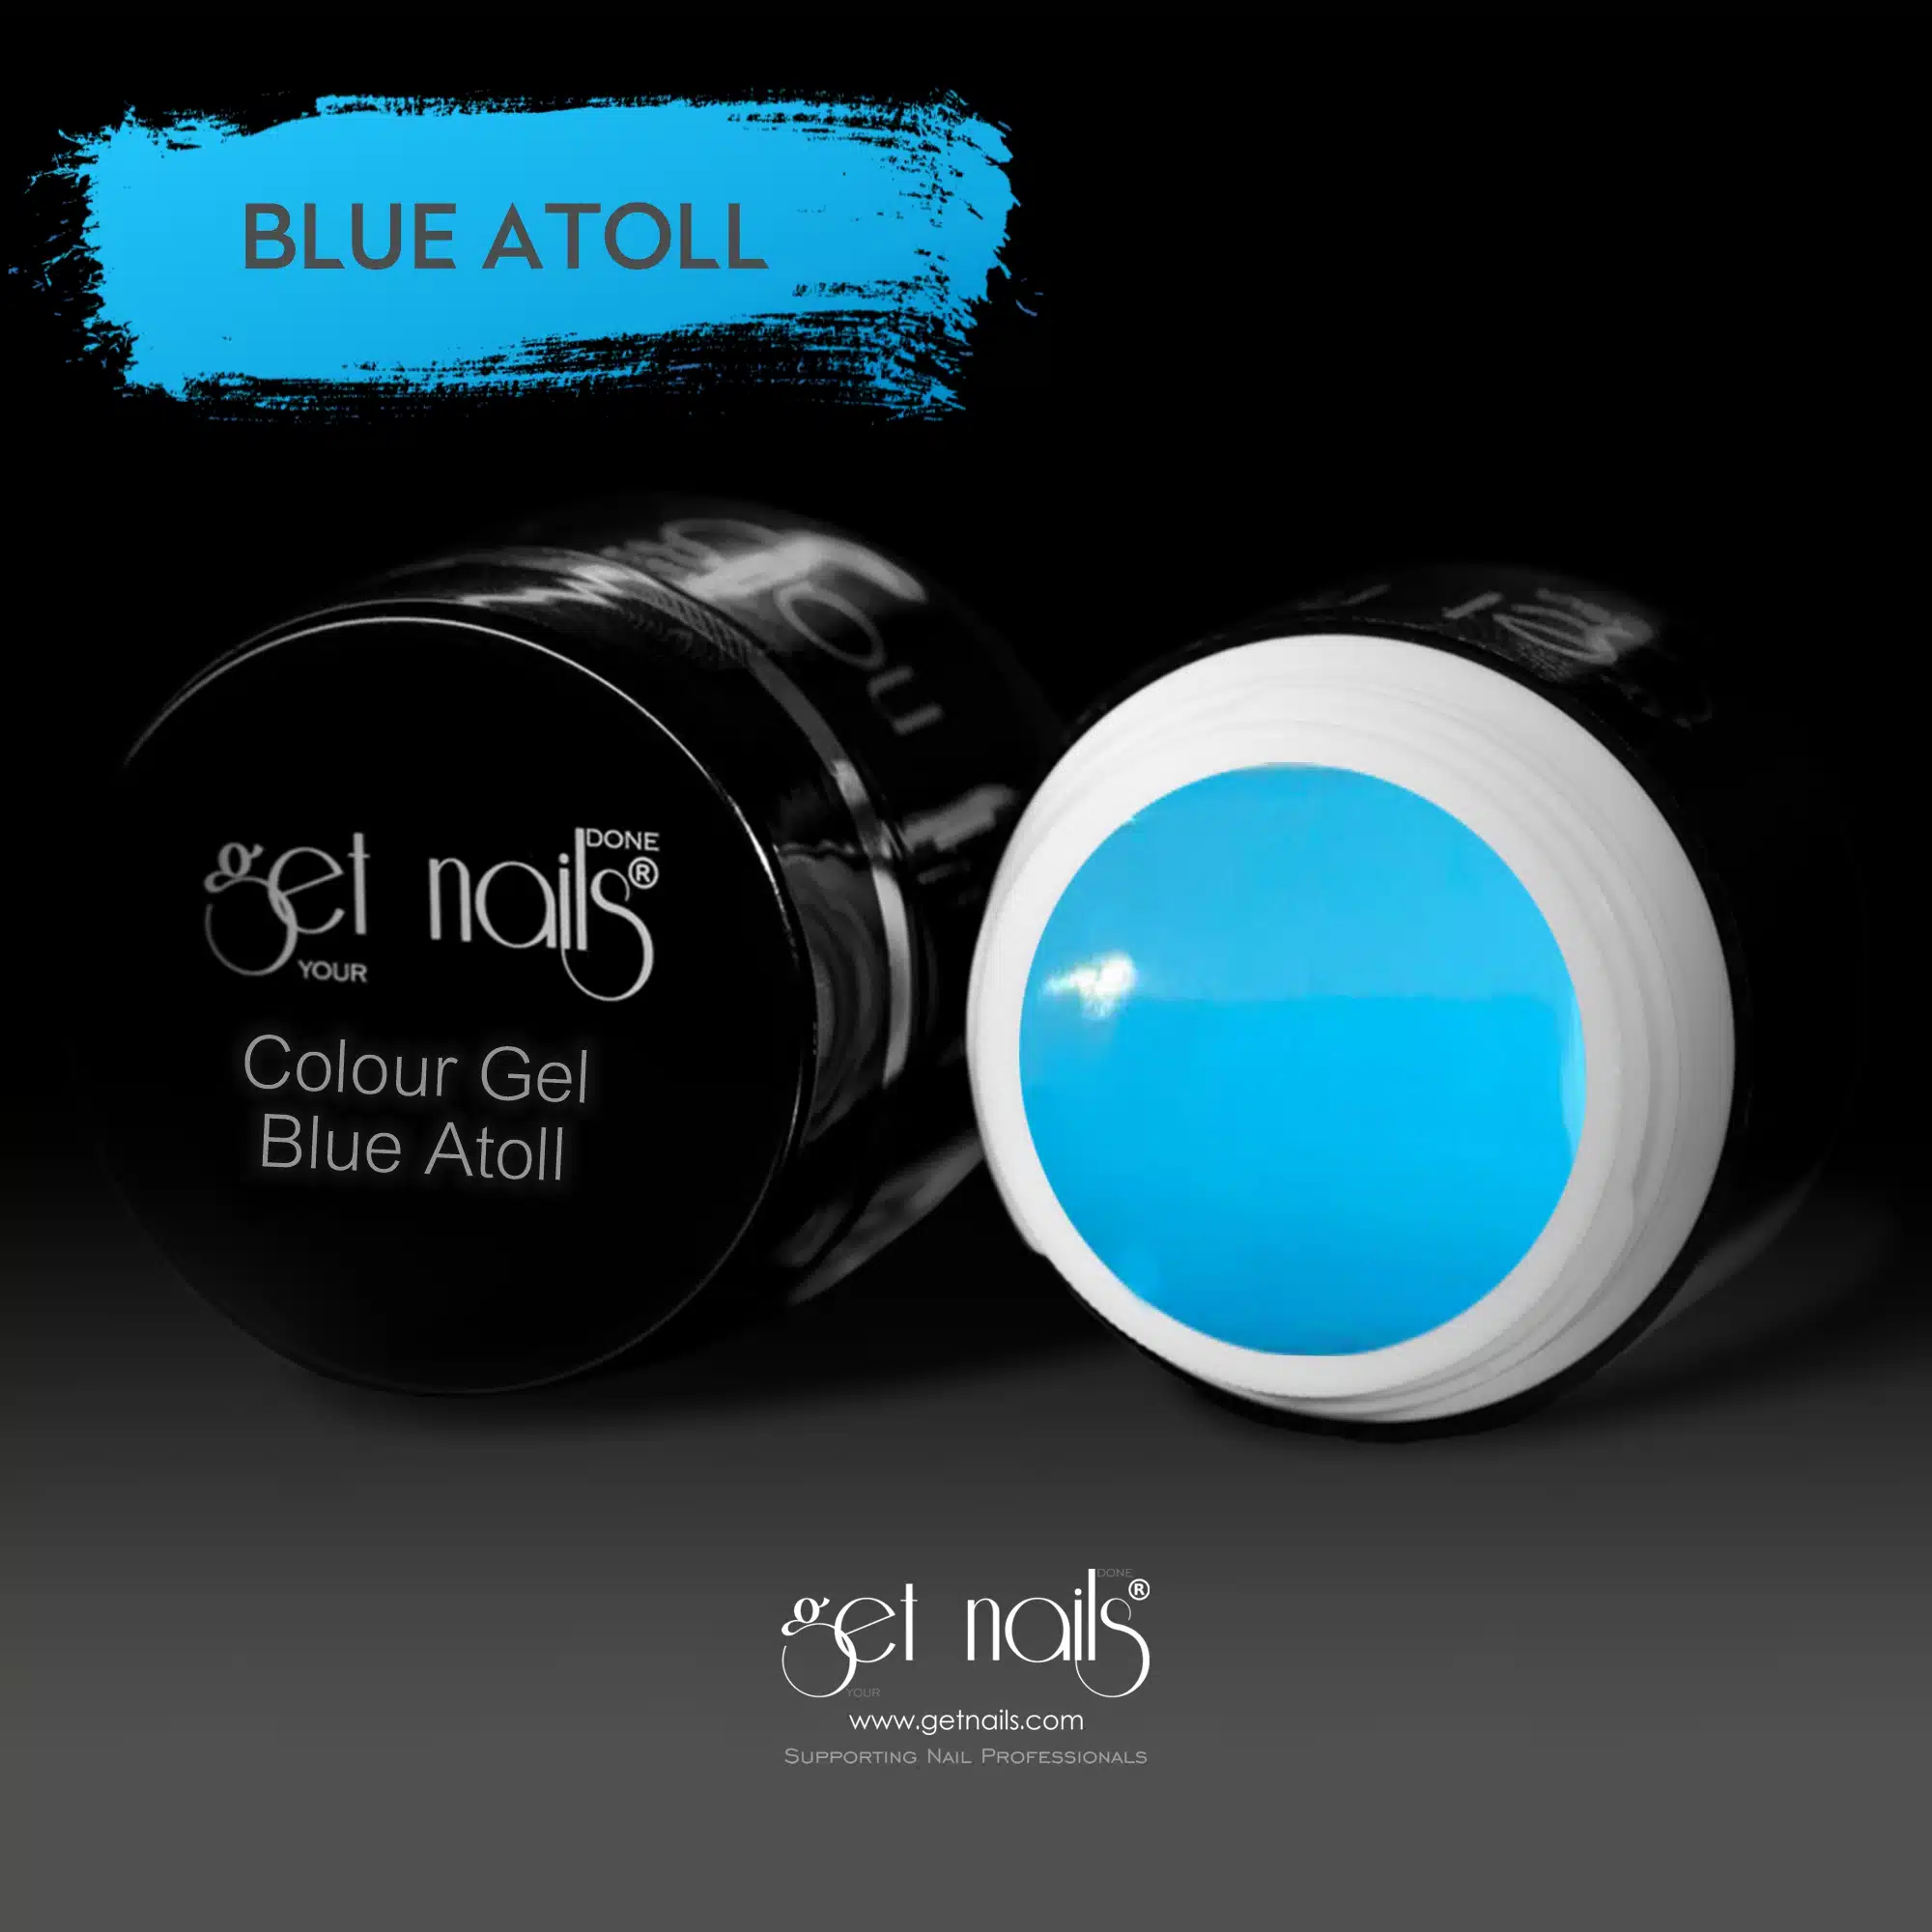 Get Nails Austria - Colour Gel Blue Atoll 5g